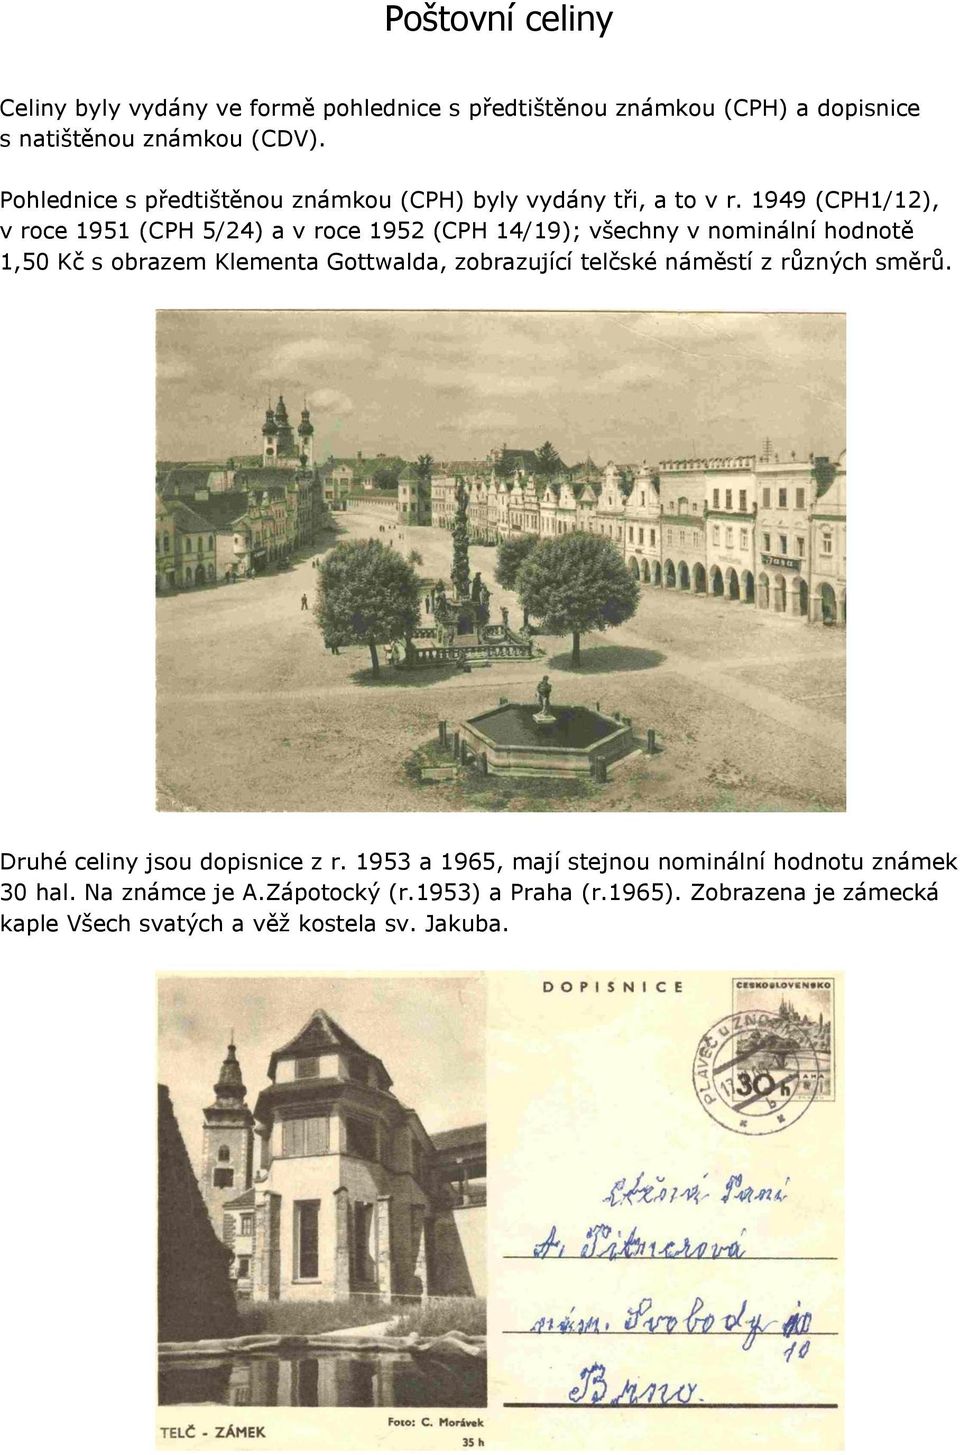 1949 (CPH1/12), v roce 1951 (CPH 5/24) a v roce 1952 (CPH 14/19); všechny v nominální hodnotě 1,50 Kč s obrazem Klementa Gottwalda, zobrazující